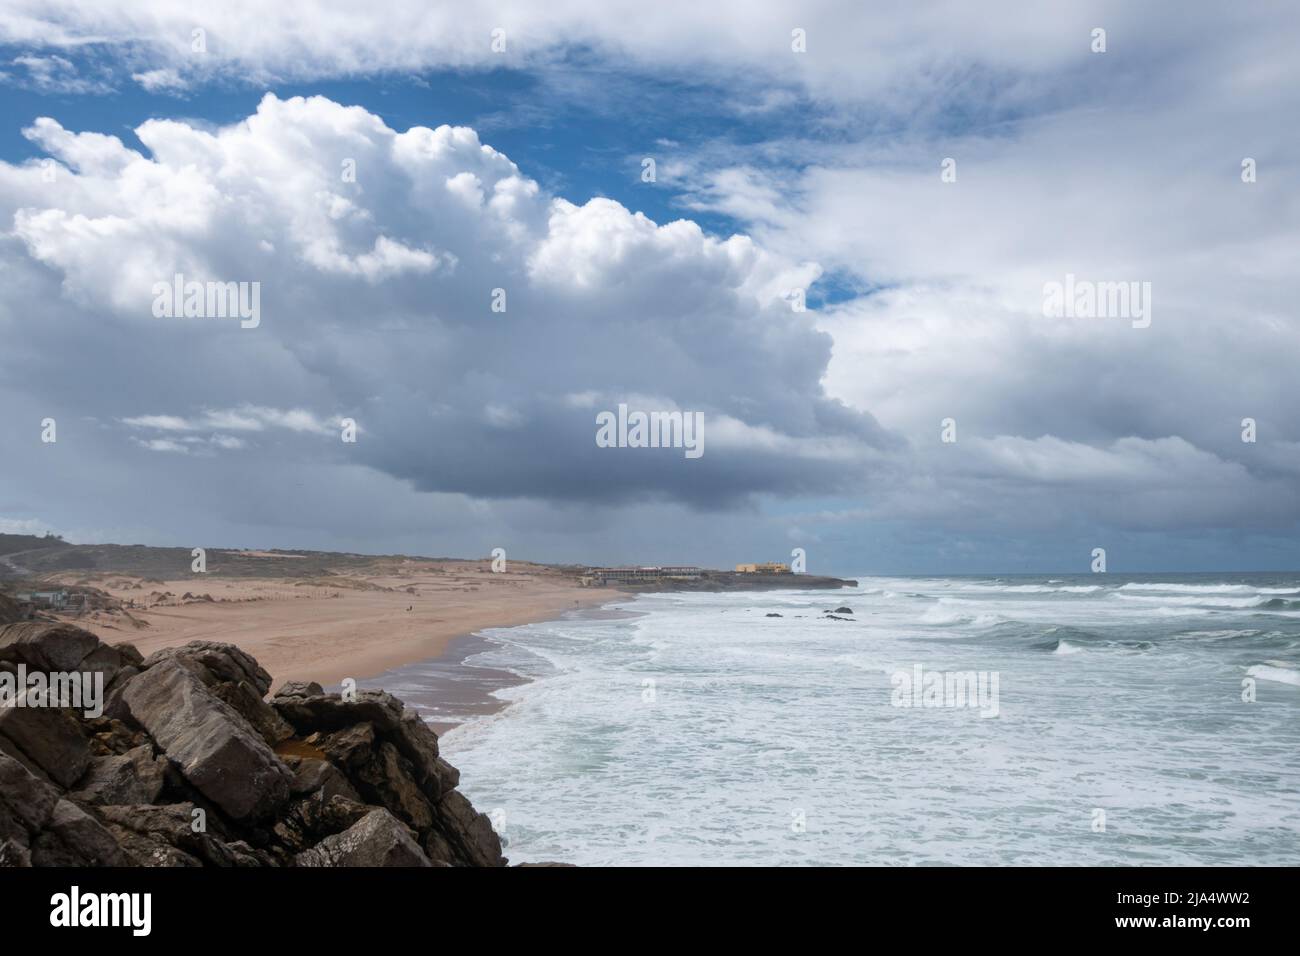 Grandes et nombreuses vagues de l'océan Atlantique qui se déferlent dans la côte rocheuse près de la plage de Guincho - Praia do Guincho avec des nuages spectaculaires dans le ciel contre t Banque D'Images